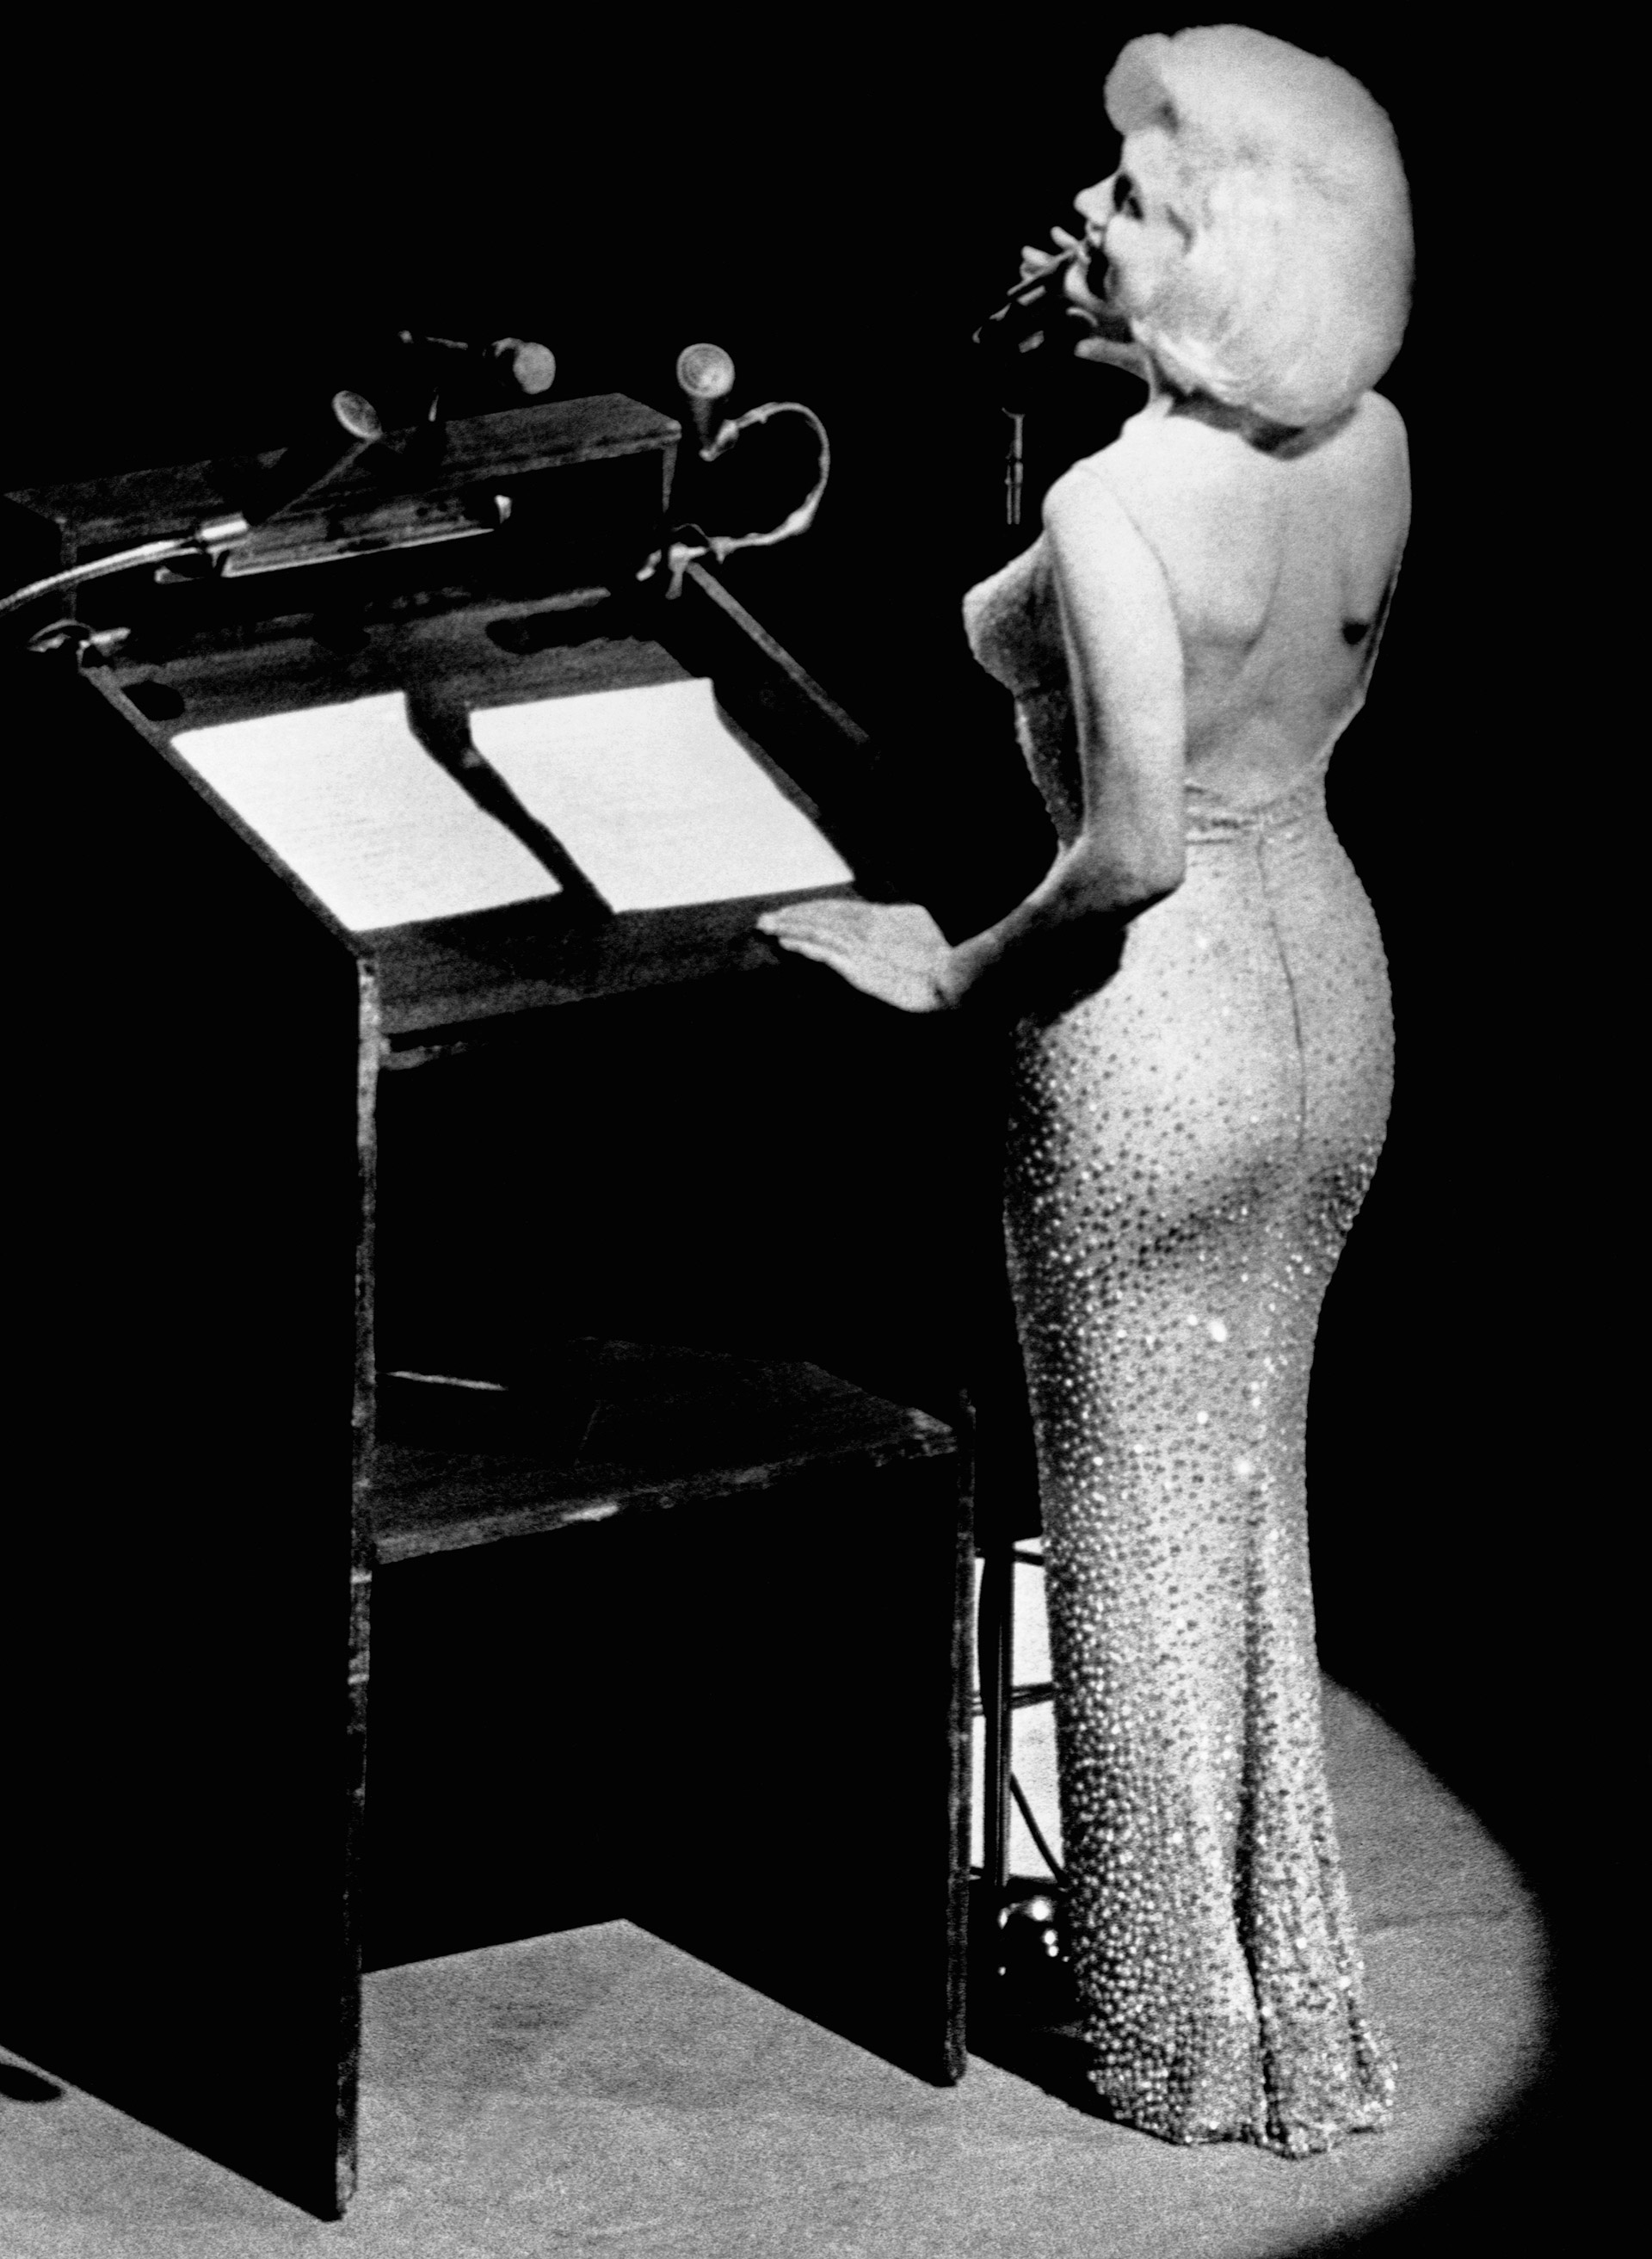 El impactante vestido que llevó Marilyn esa noche era tan ceñido que se lo cosieron puesto. Fue un diseño del francés Jean Louis Berthault, tenía 2.500 cristales, era de color piel y la actriz pagó por él 12 mil dólares